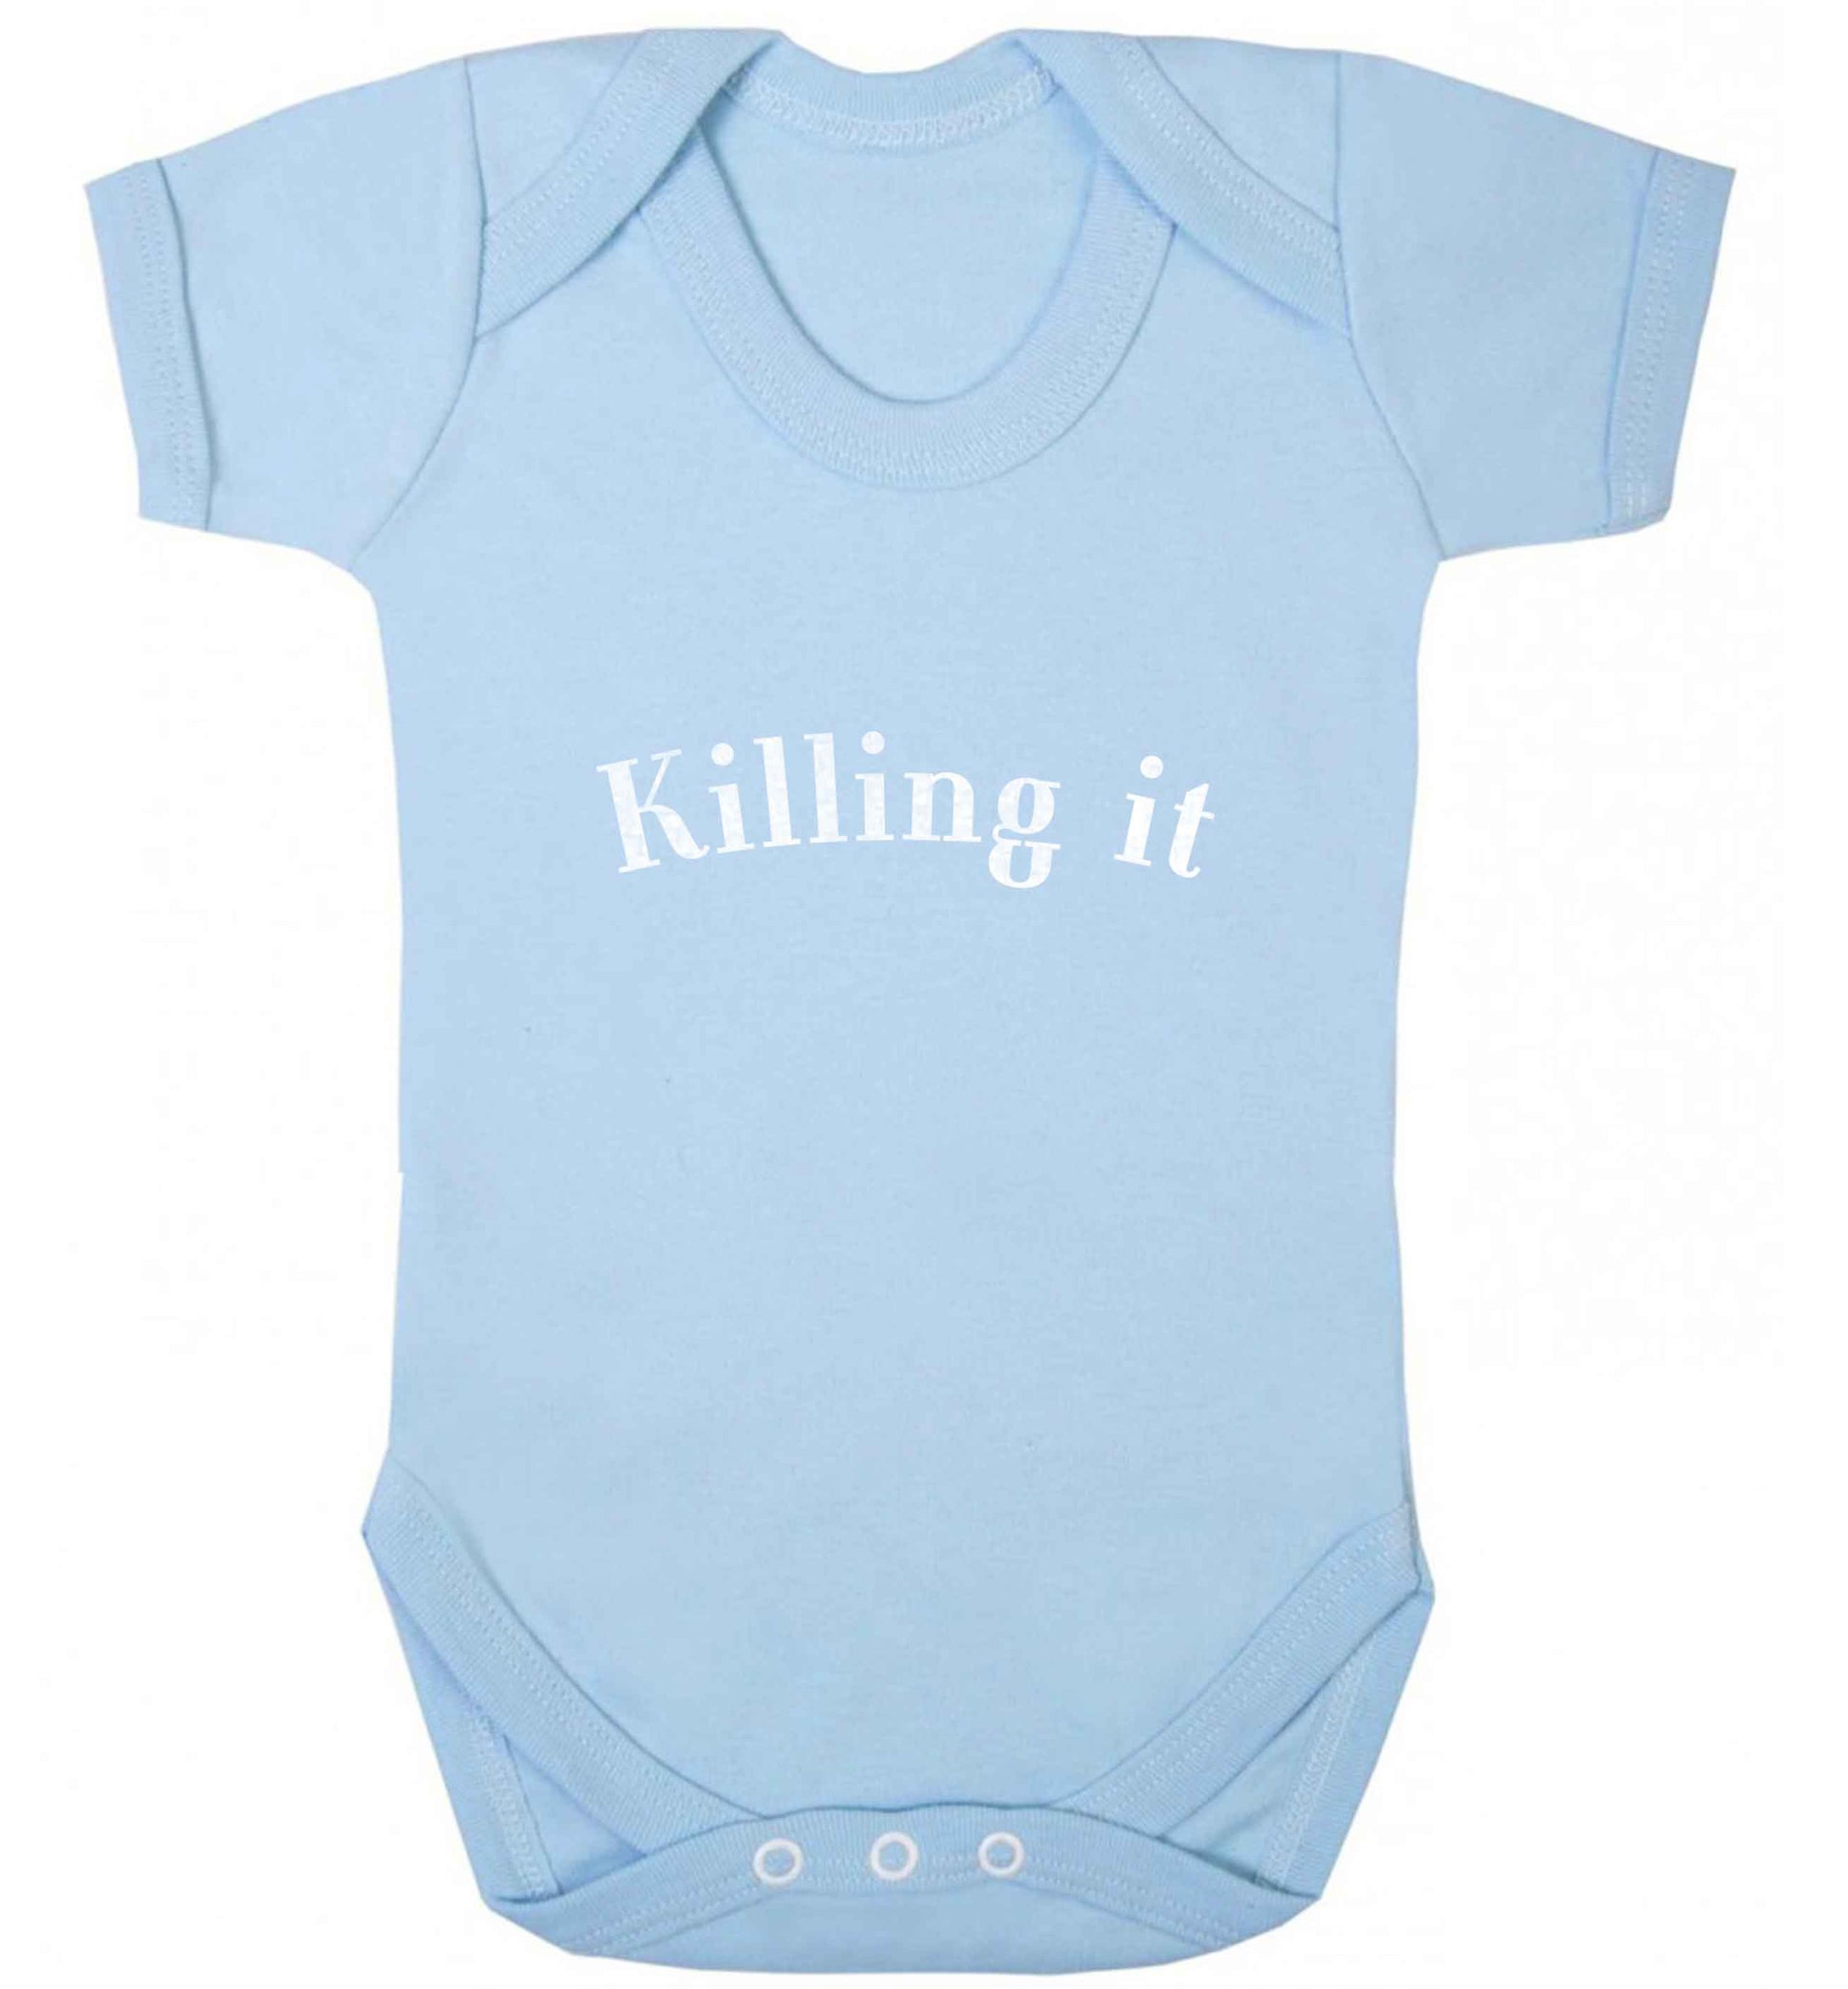 Killing it baby vest pale blue 18-24 months